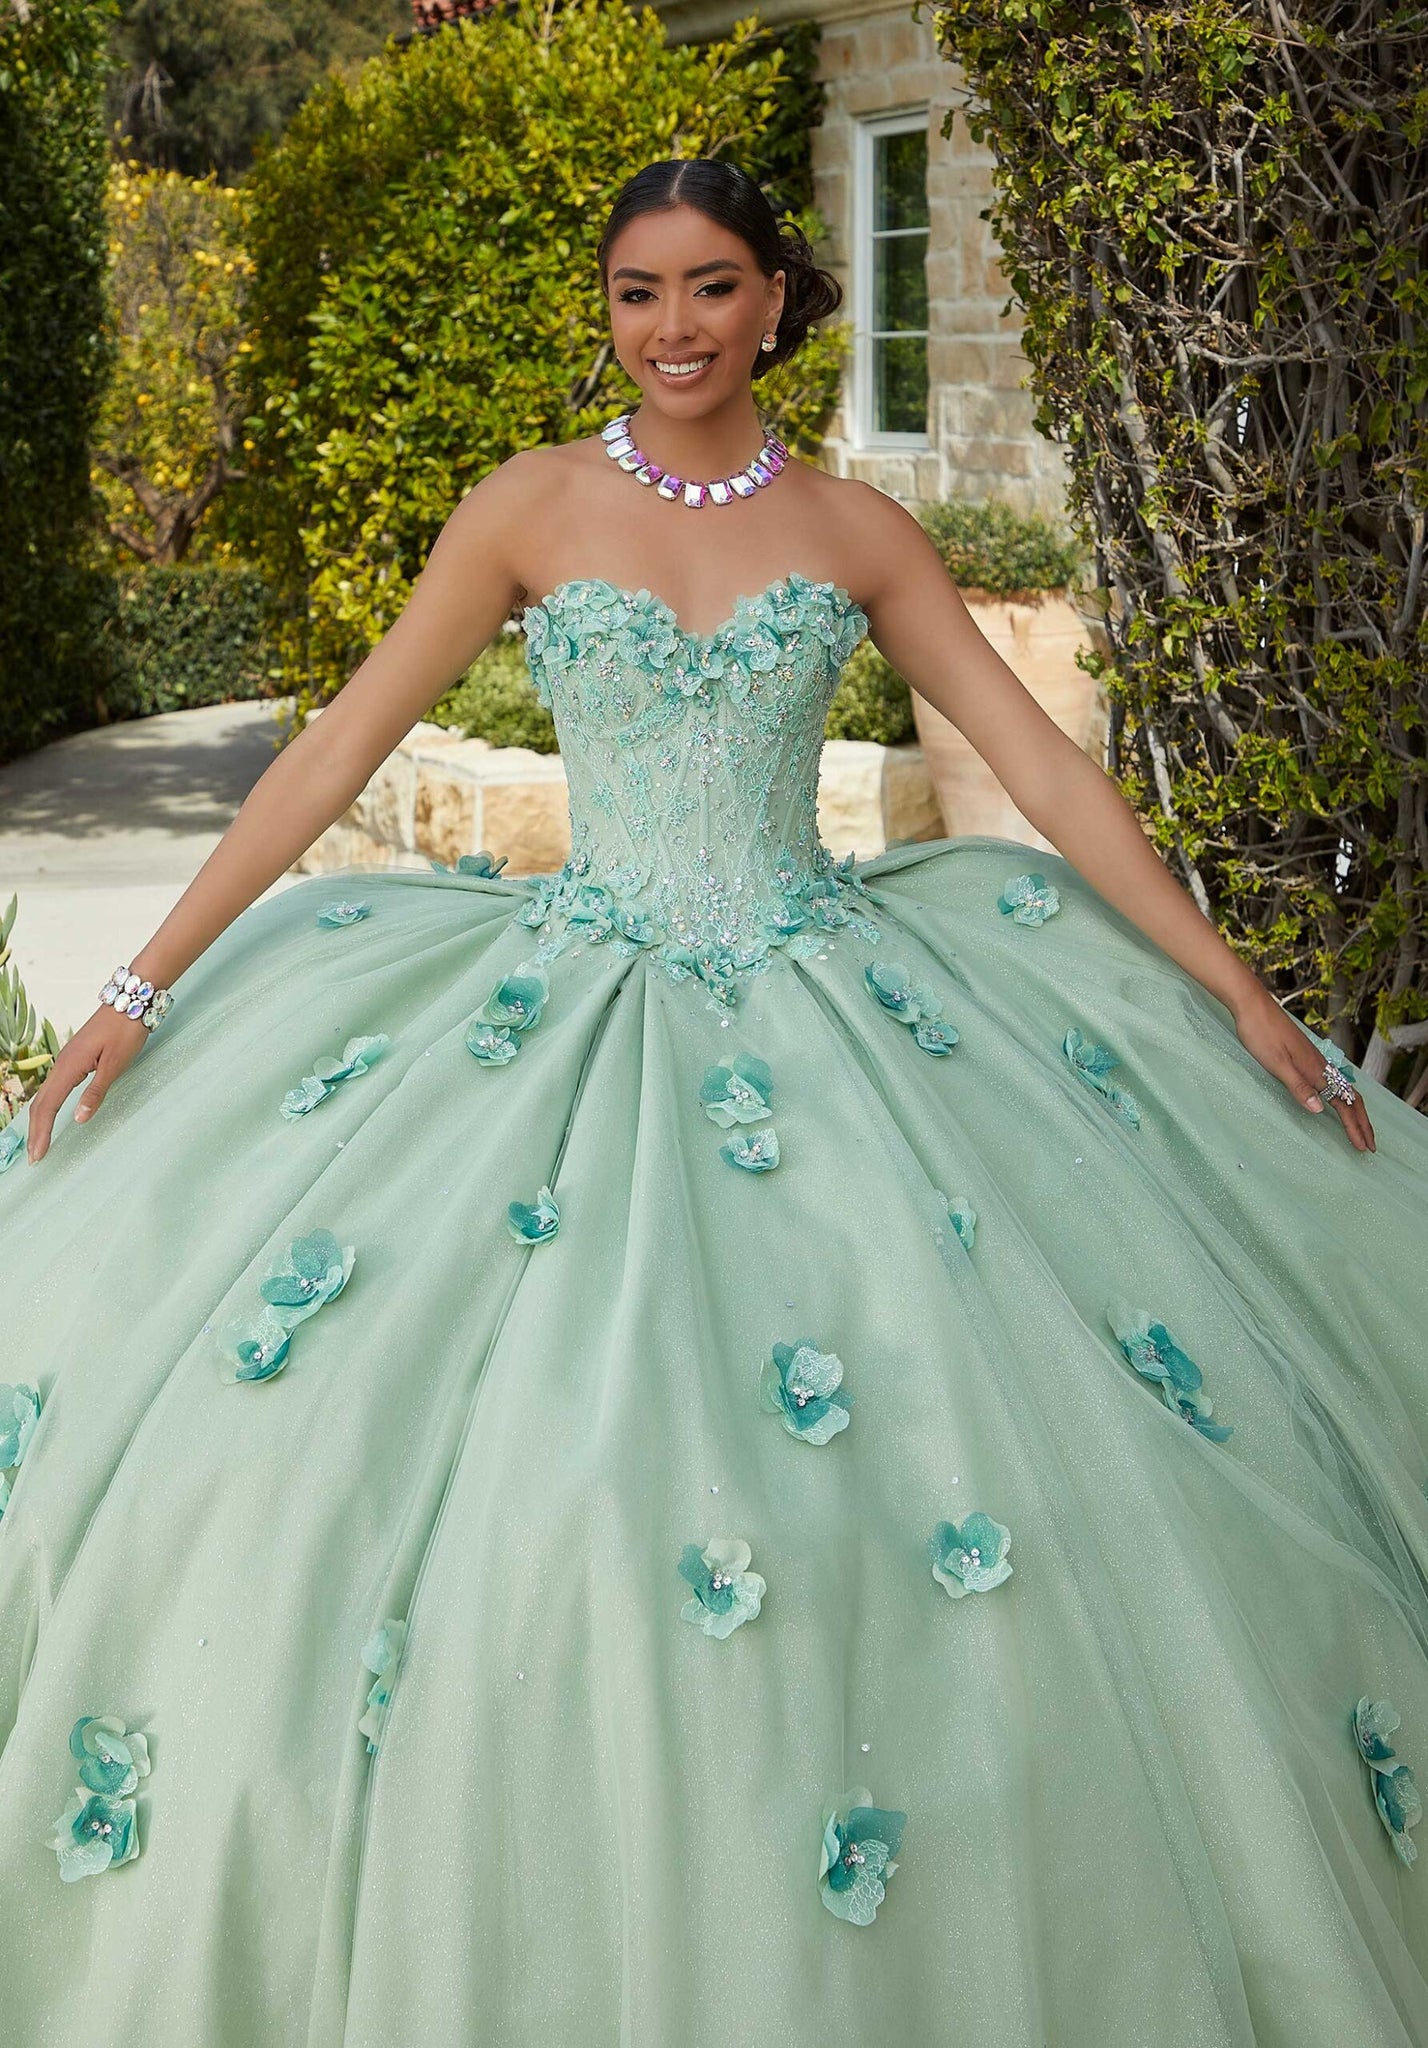 Chantilly Lace Quinceañera Dress with Floral Appliqués